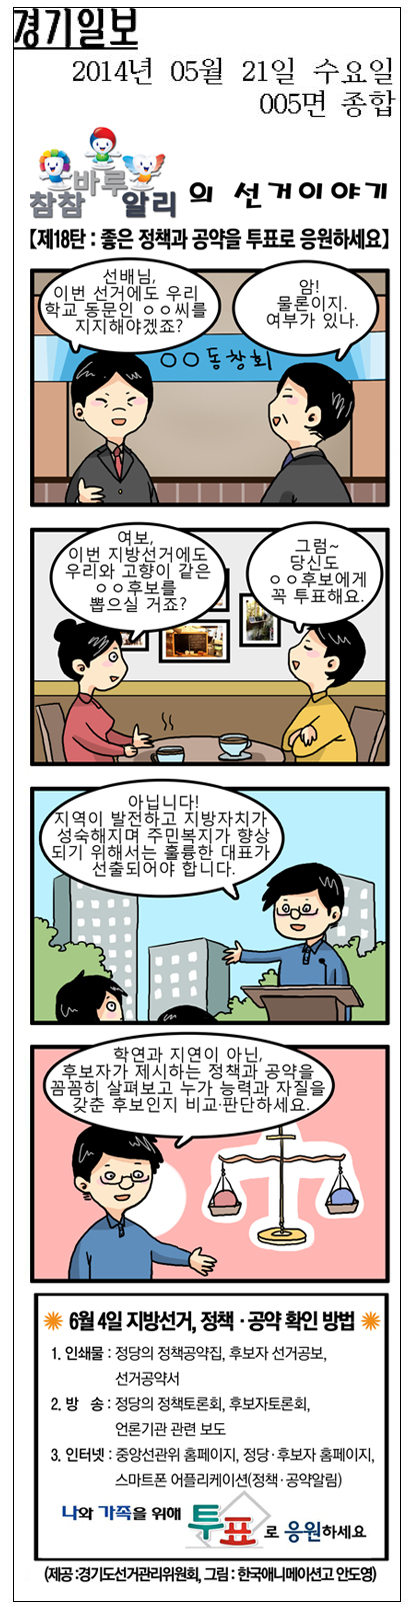 '참참·바루·알리'의 선거이야기 만화 18화